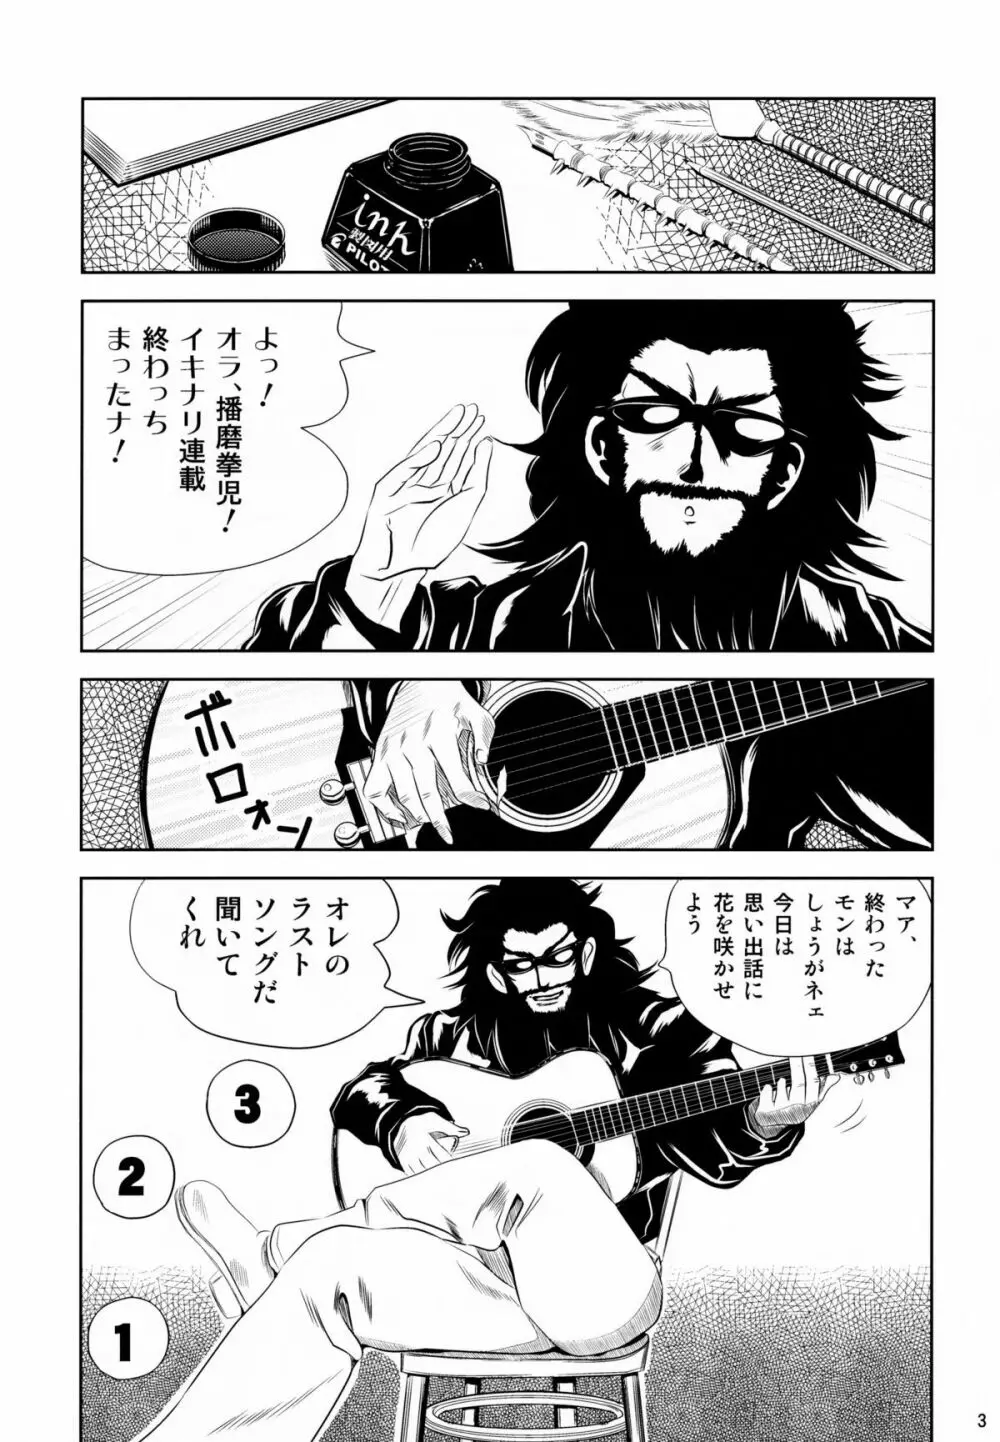 school ちゃんぷるー 13 3ページ